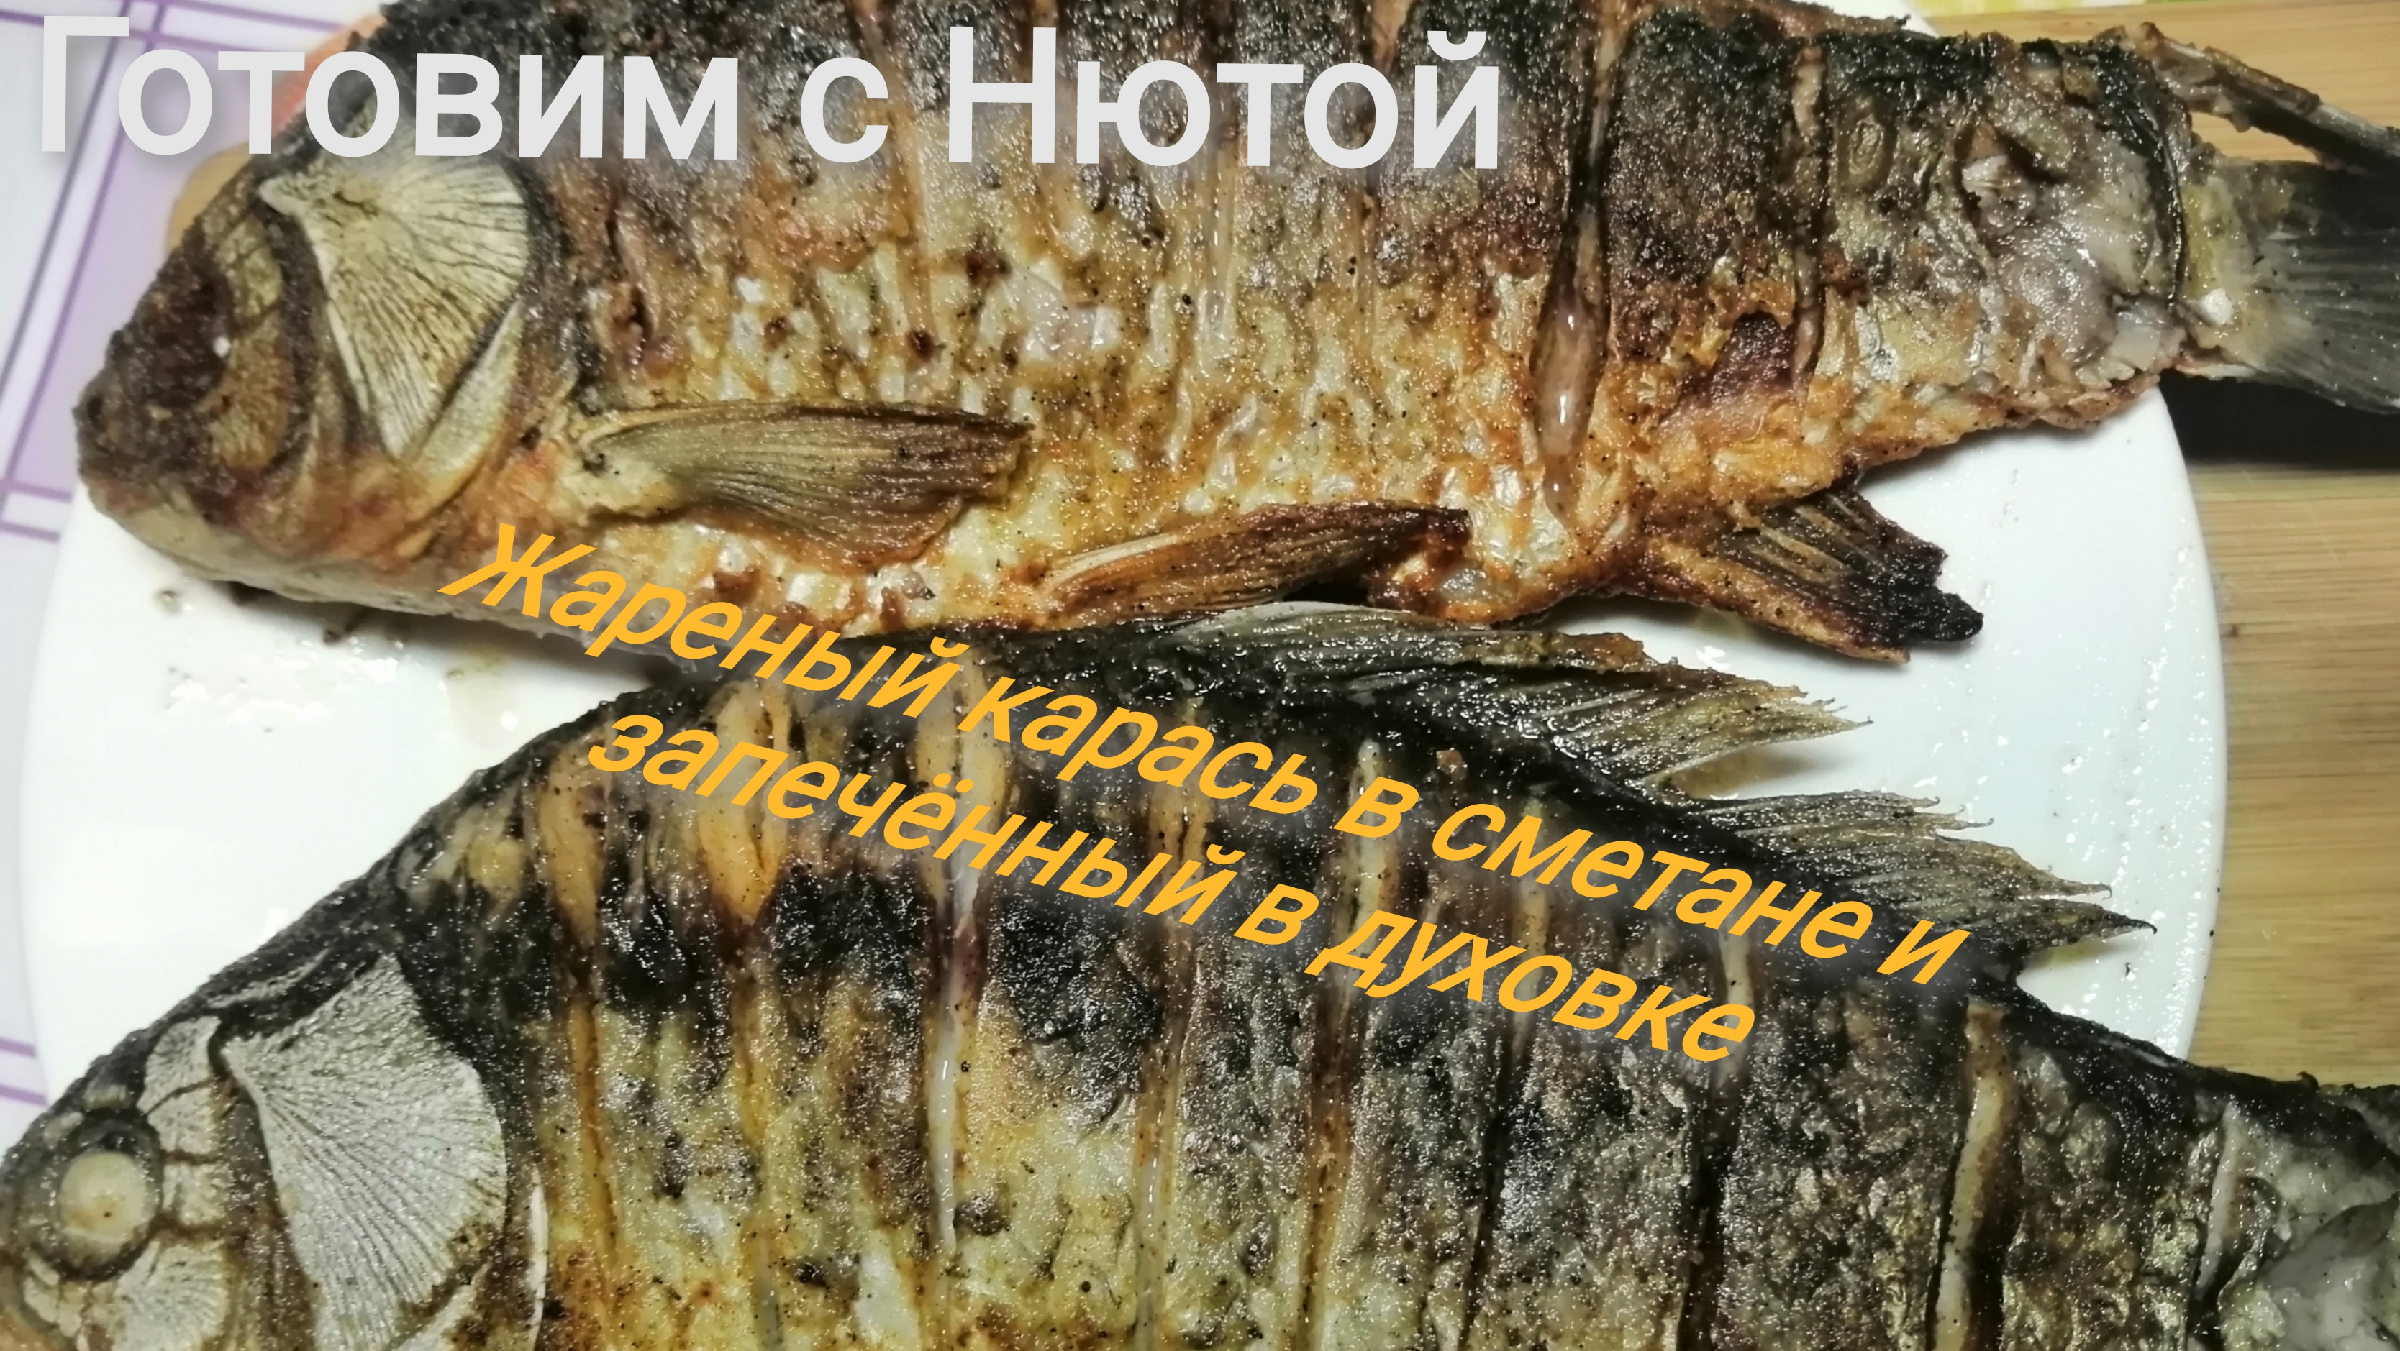 Караси в сметане - как приготовить, рецепт с фото по шагам, калорийность - sauna-chelyabinsk.ru